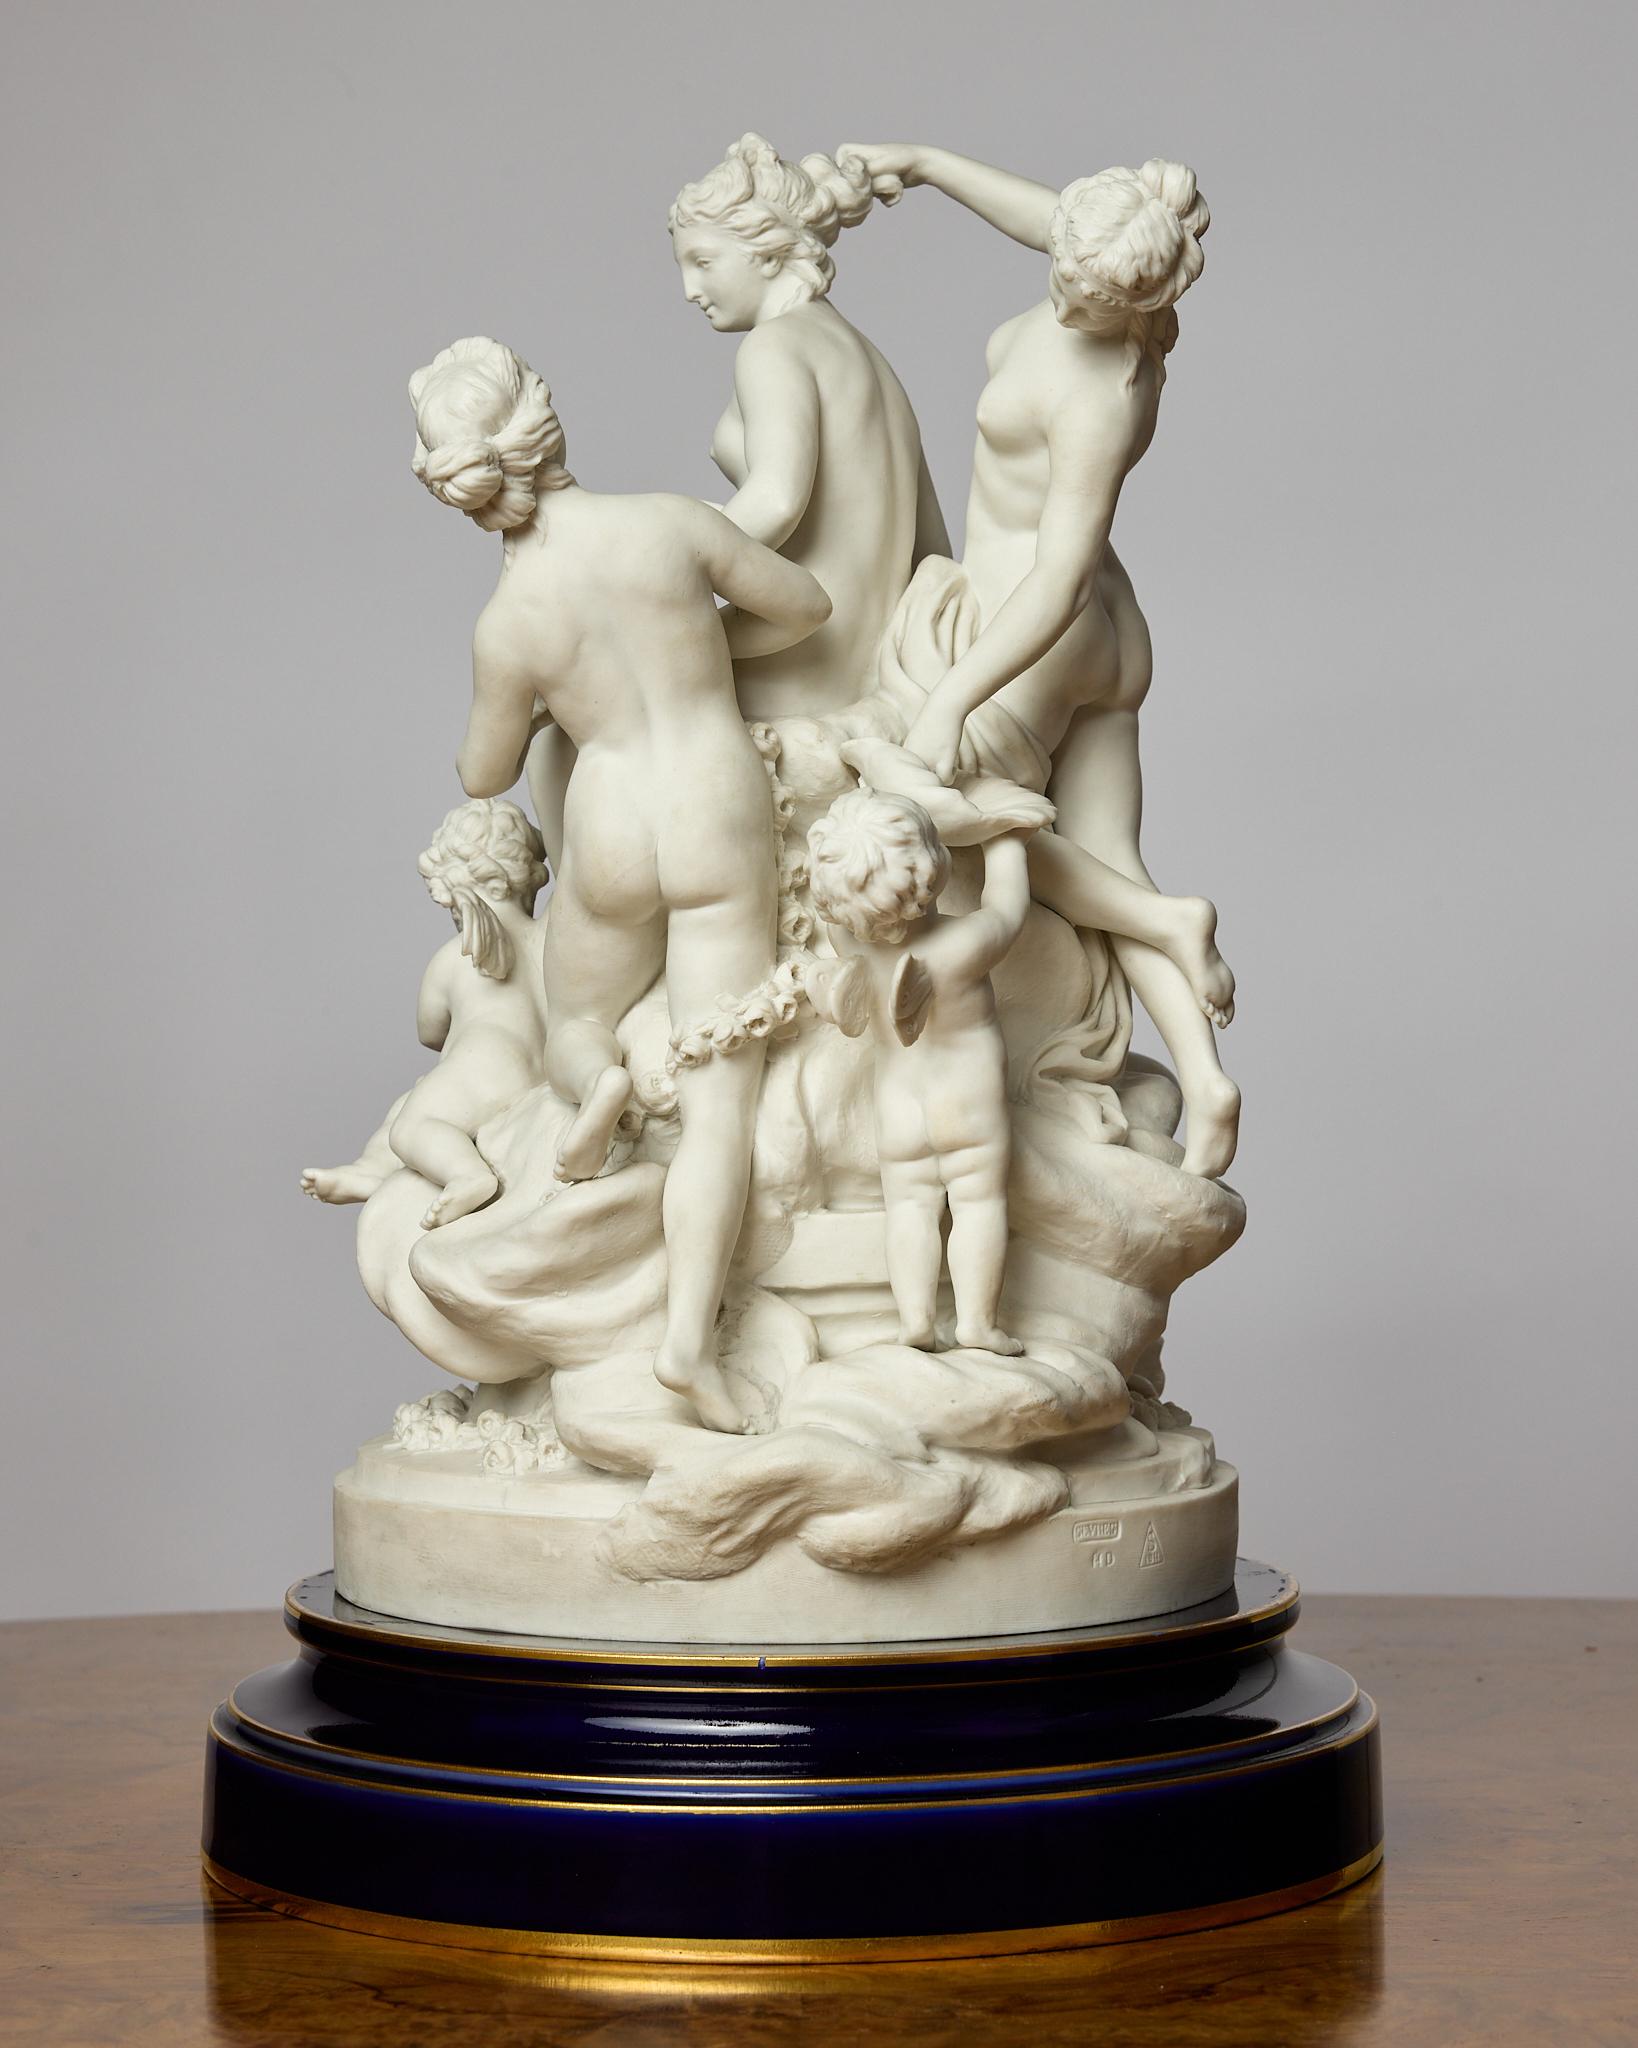 Il s'agit d'un superbe groupe figuratif en porcelaine cuite représentant la Toilette de Vénus dans le style Louis XVI. La sculpture a été modelée à l'origine par Louis-Simon Boizot (français, 1743-1809). 
Vénus est assise, entourée de trois